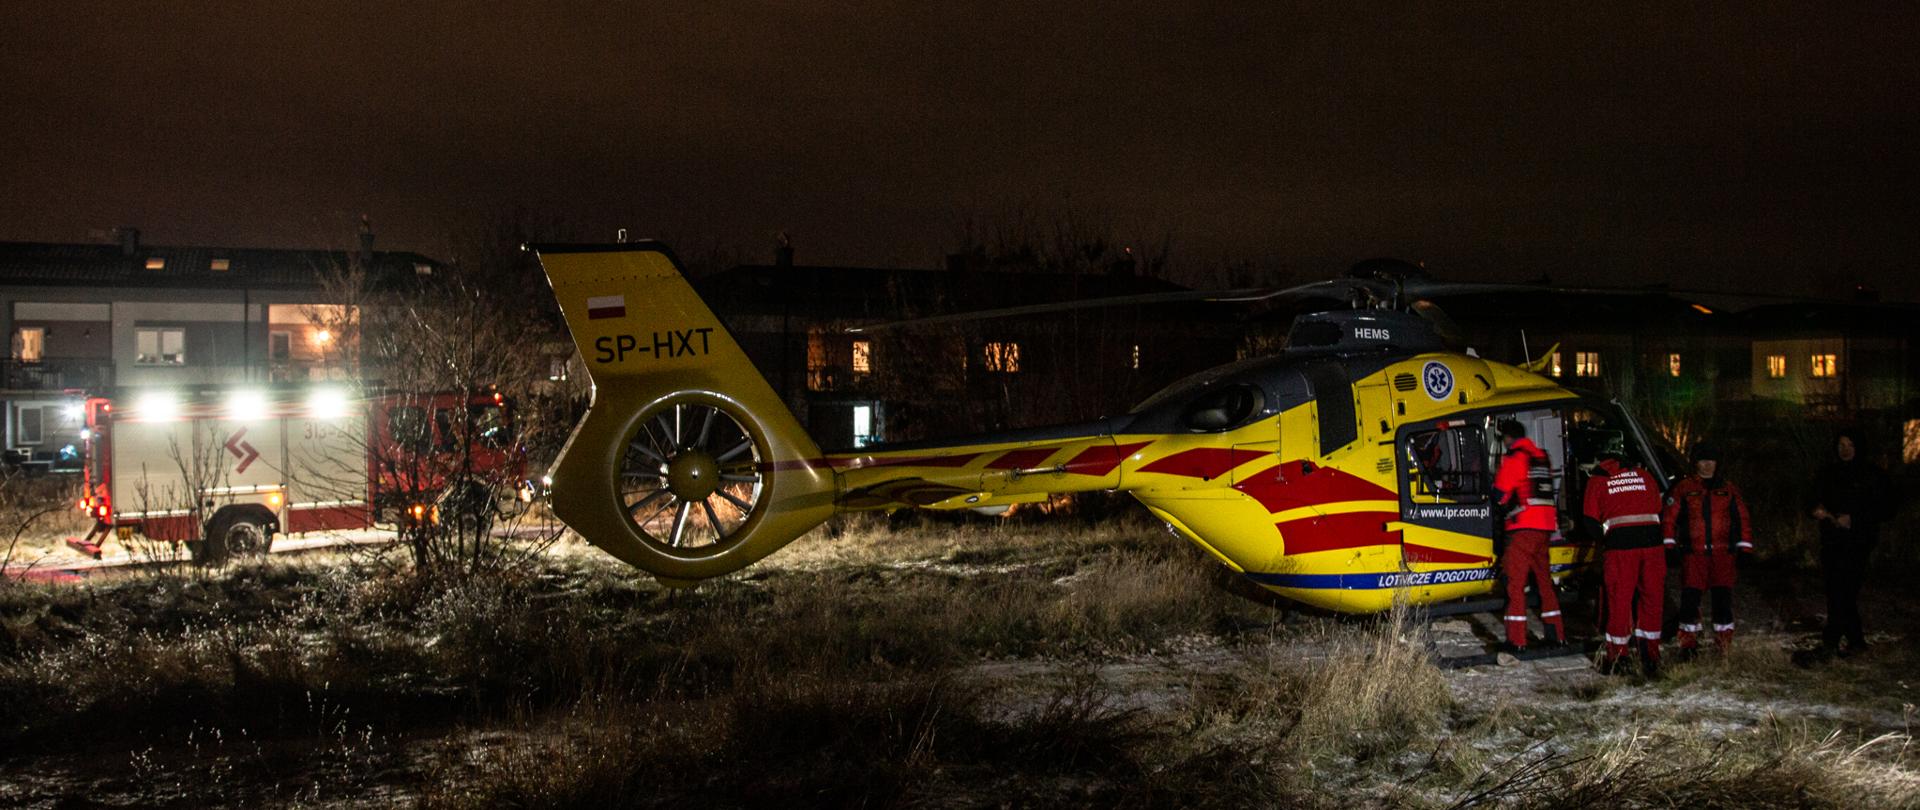 Na zdjęciu na pierwszym planie widoczny jest helikopter LPR i stojących przy nim ratowników medycznych. Na drugim planie w oddali widoczny jest samochód straży pożarnej z włączonym oświetleniem pola pracy.